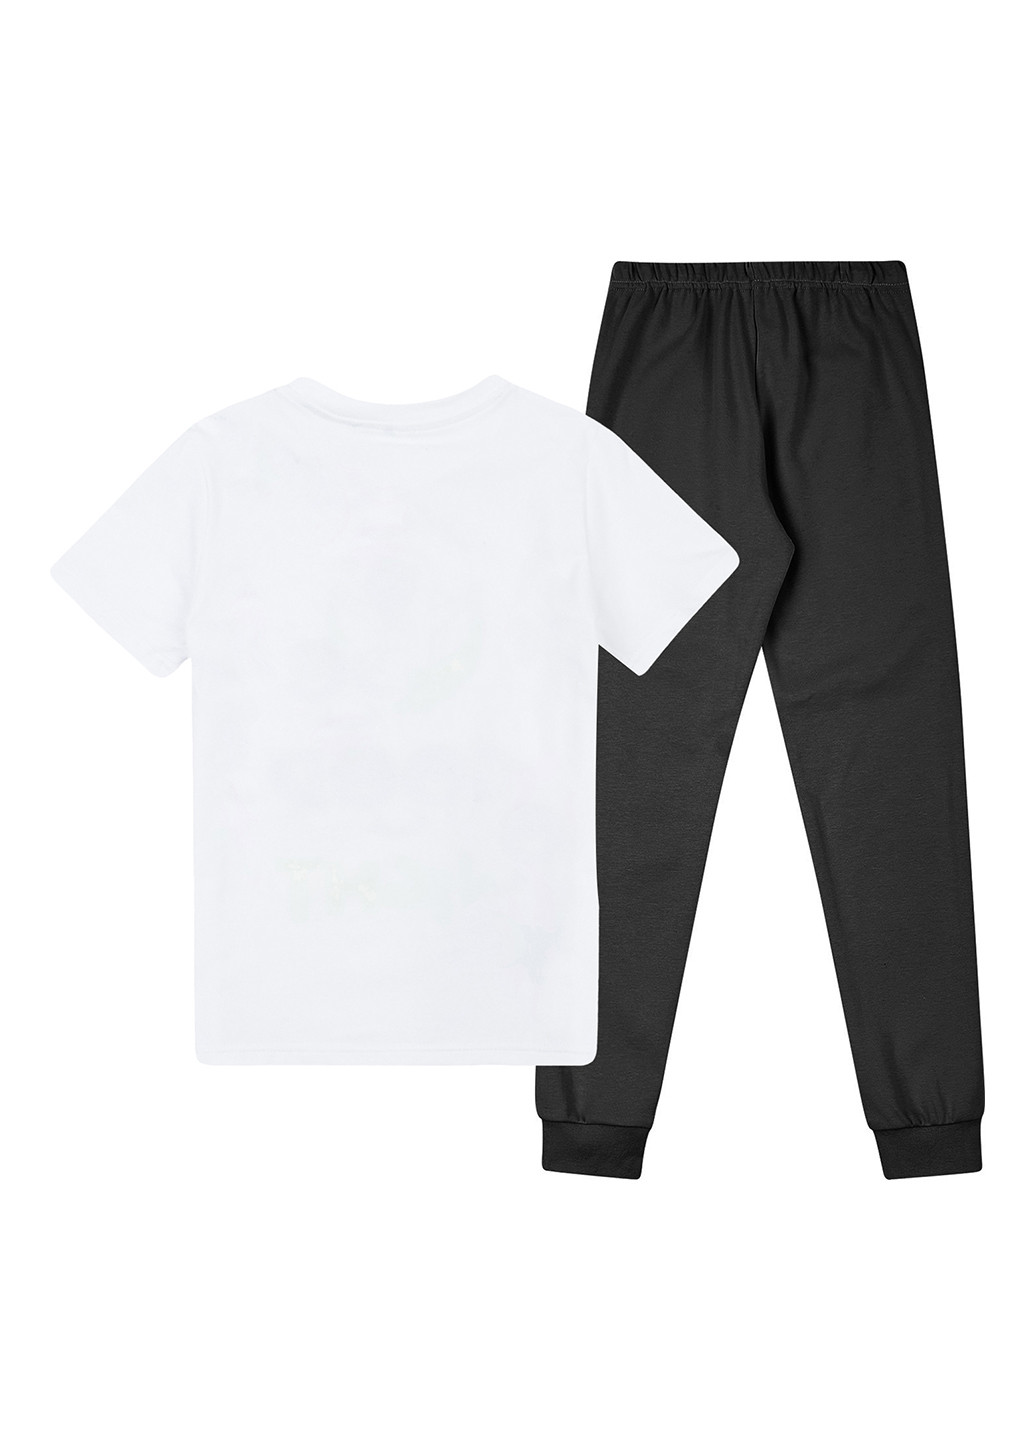 Белая всесезон пижама (футболка, брюки) футболка + брюки Garnamama